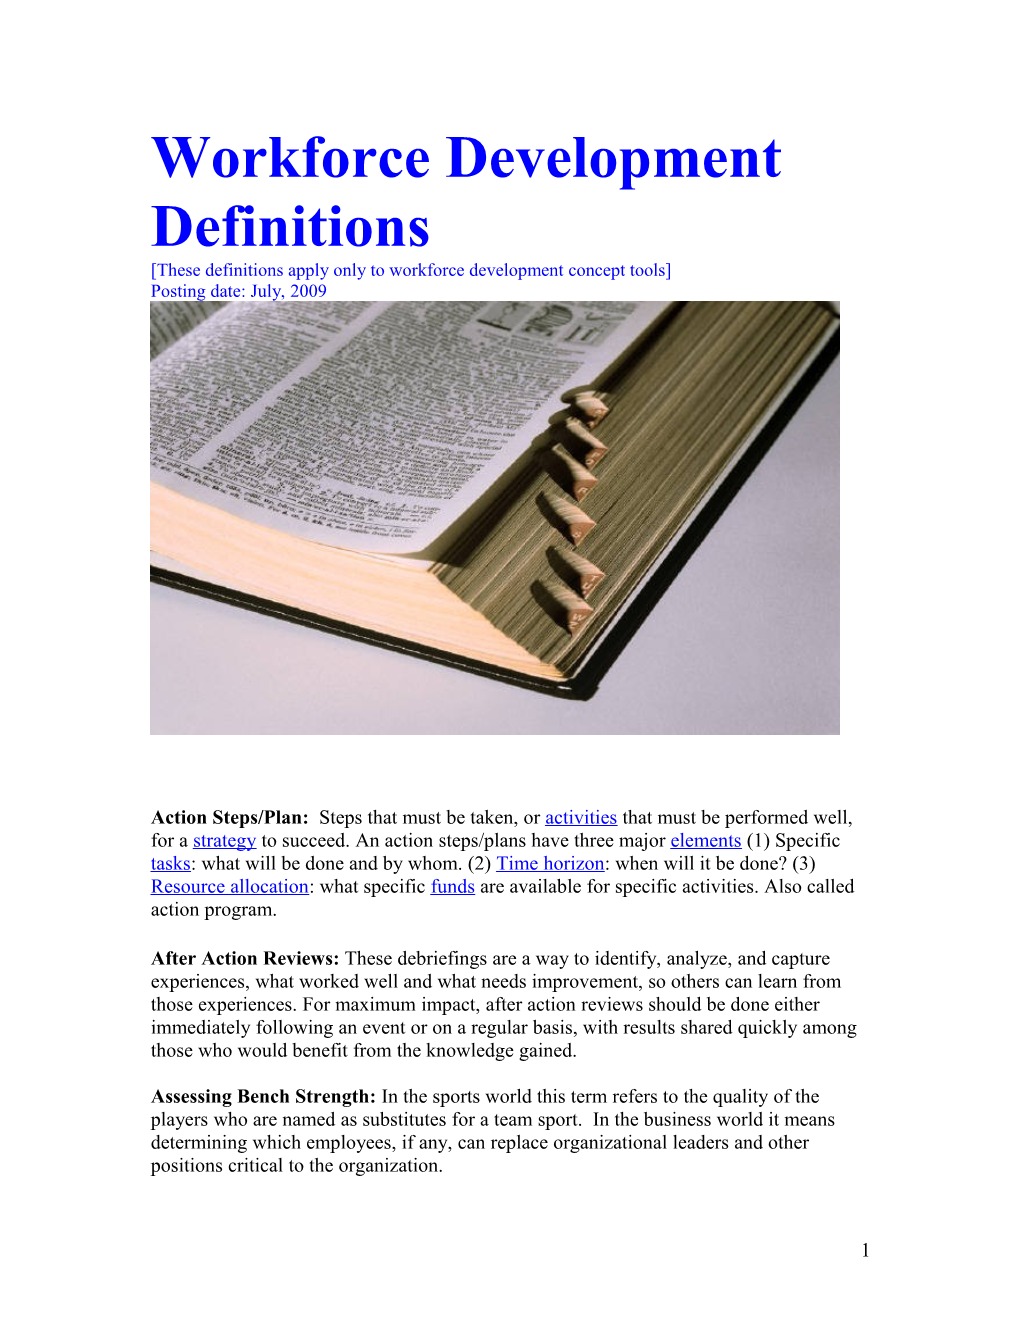 Workforce Development Definitions